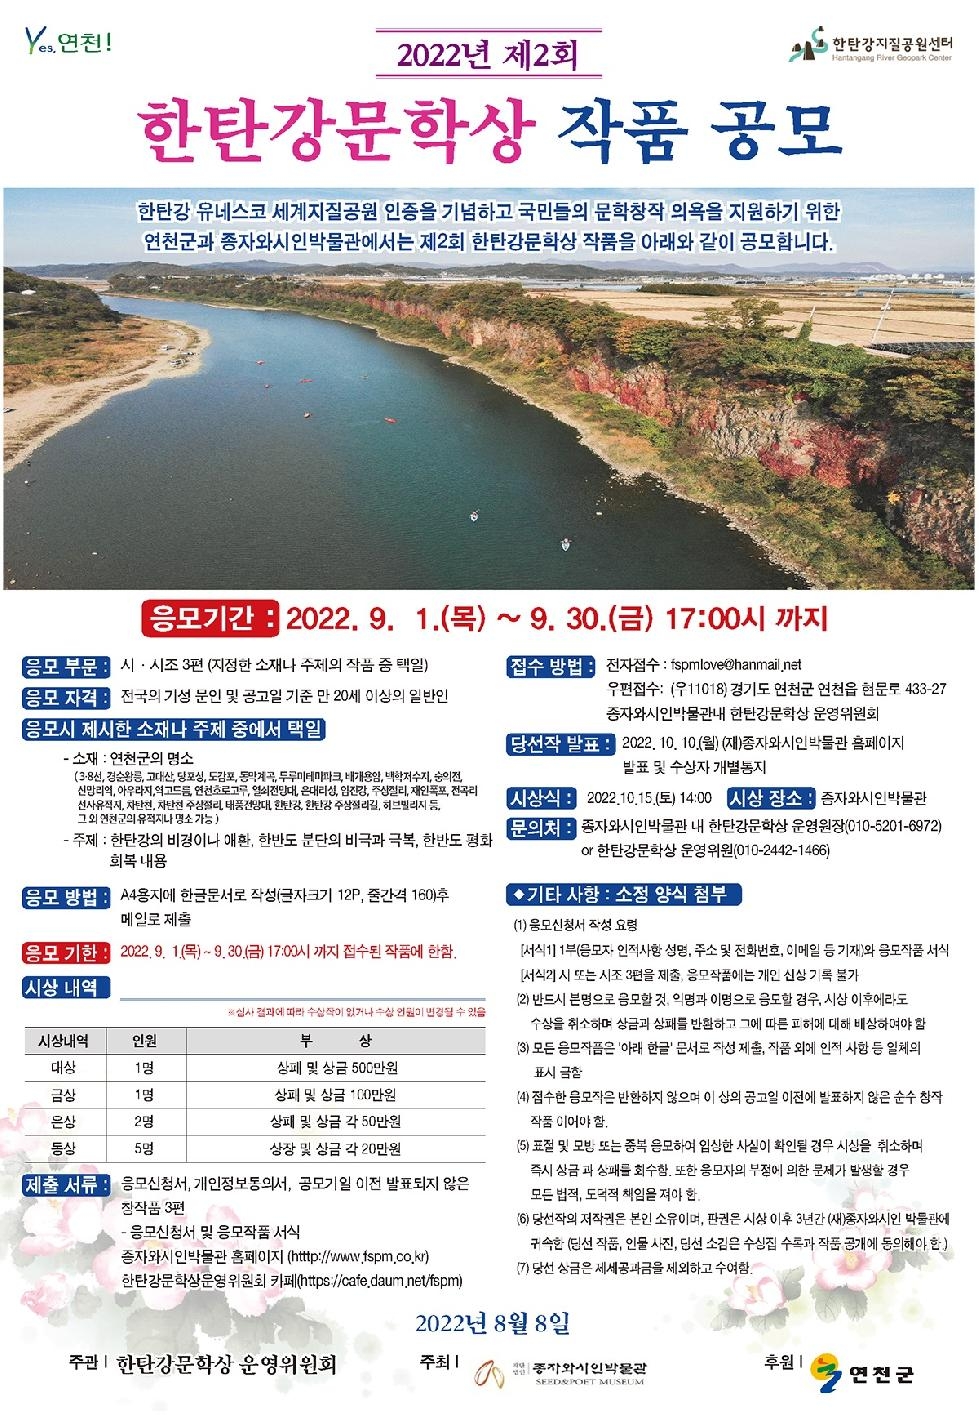 연천군, 제2회 한탄강 문학상 개최 오는 30일 까지 접수